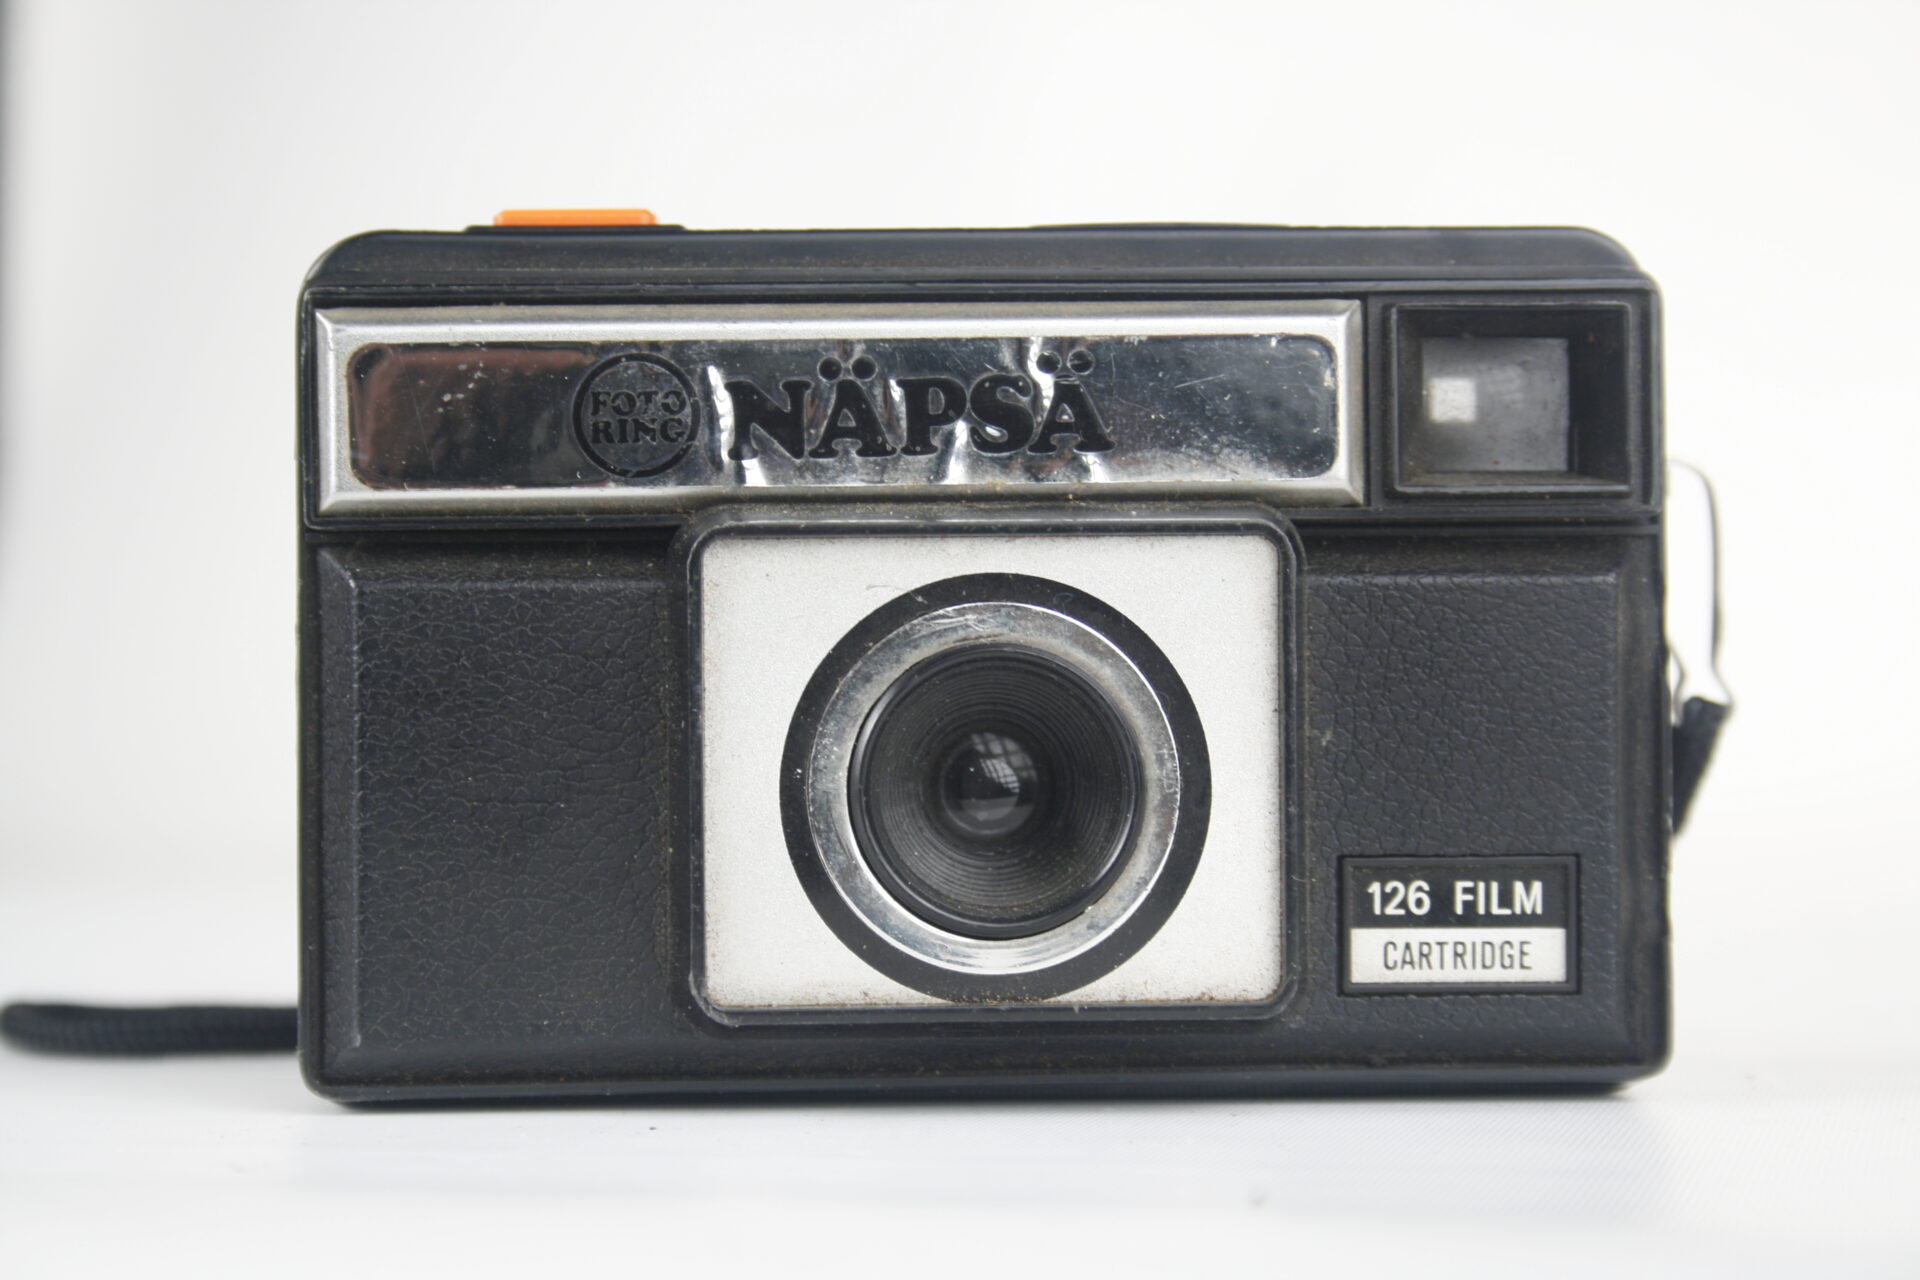 Fotoring Napsacamera. 126 film cartridge.